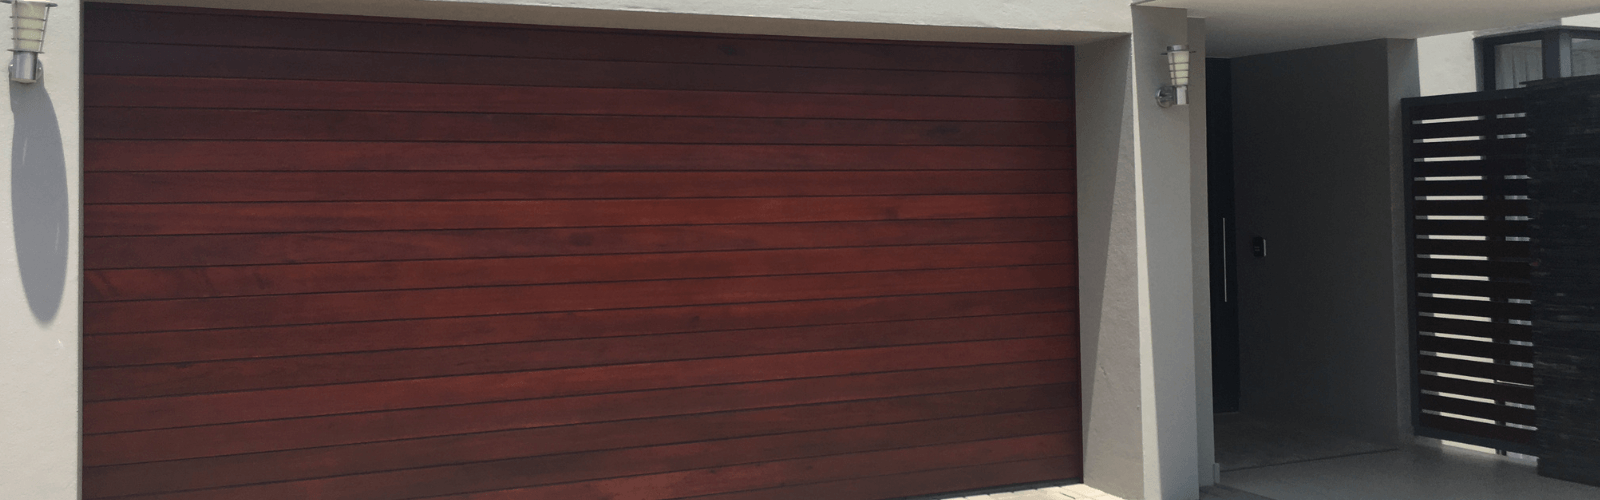 Horizontal Slatted Timber Garage Door